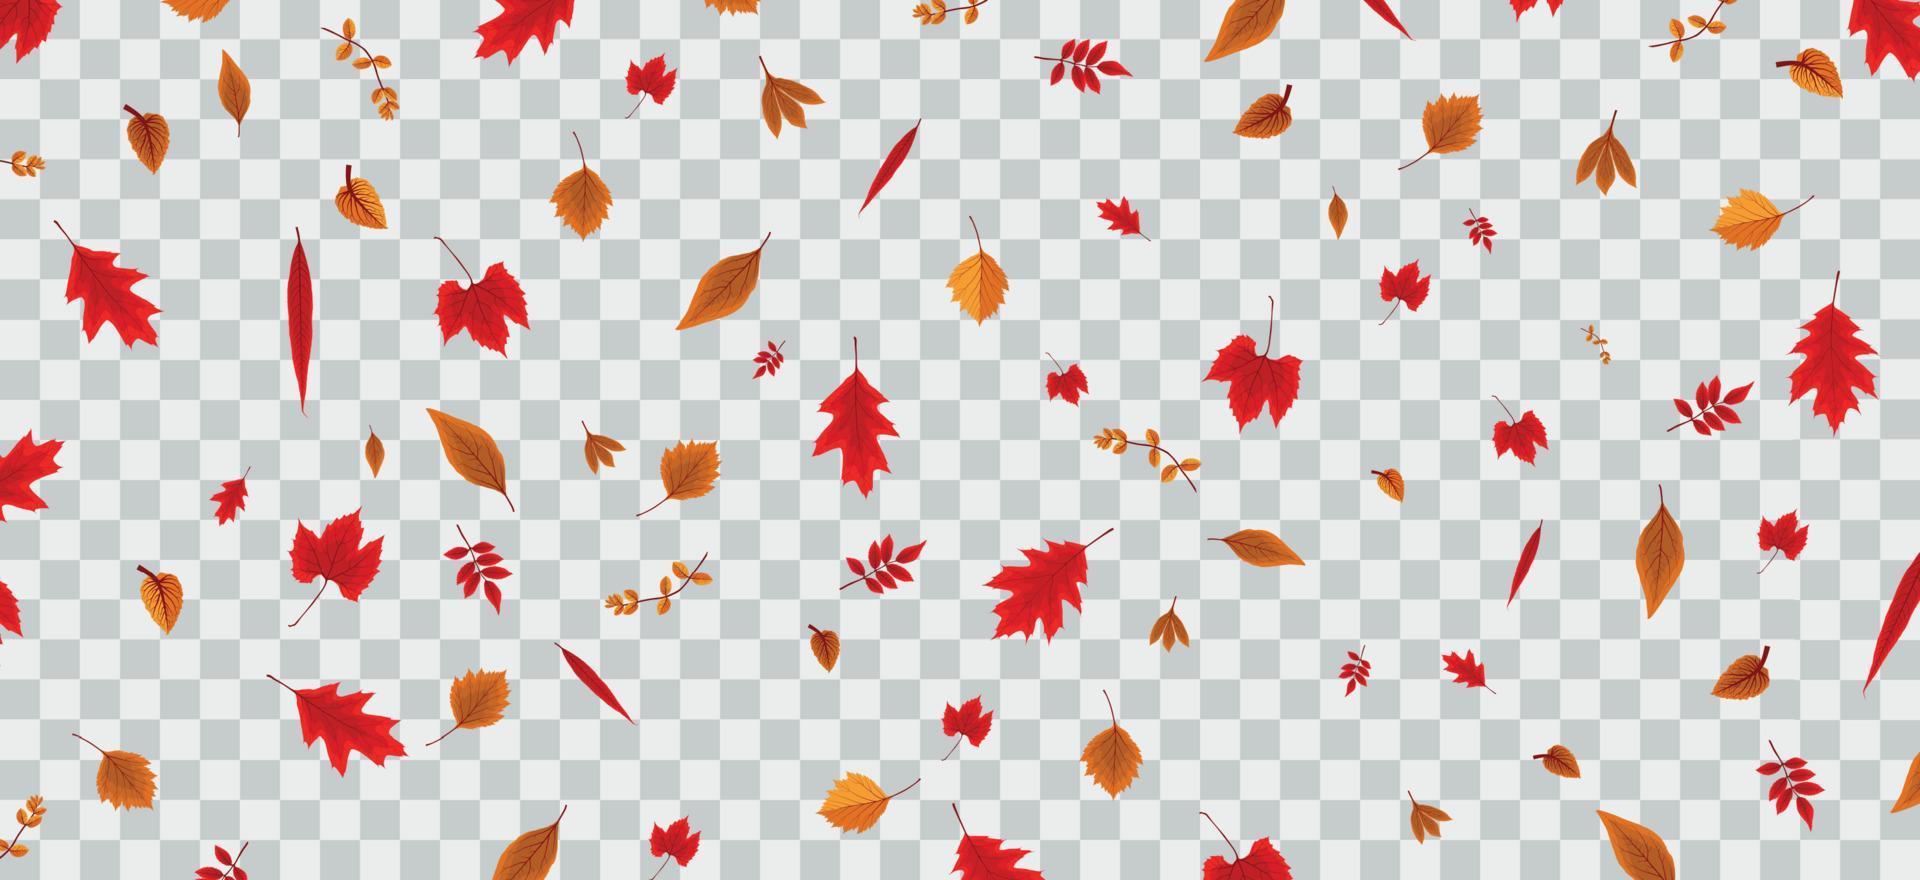 chute des feuilles d'automne colorées sur fond transparent. illustration vectorielle. vecteur